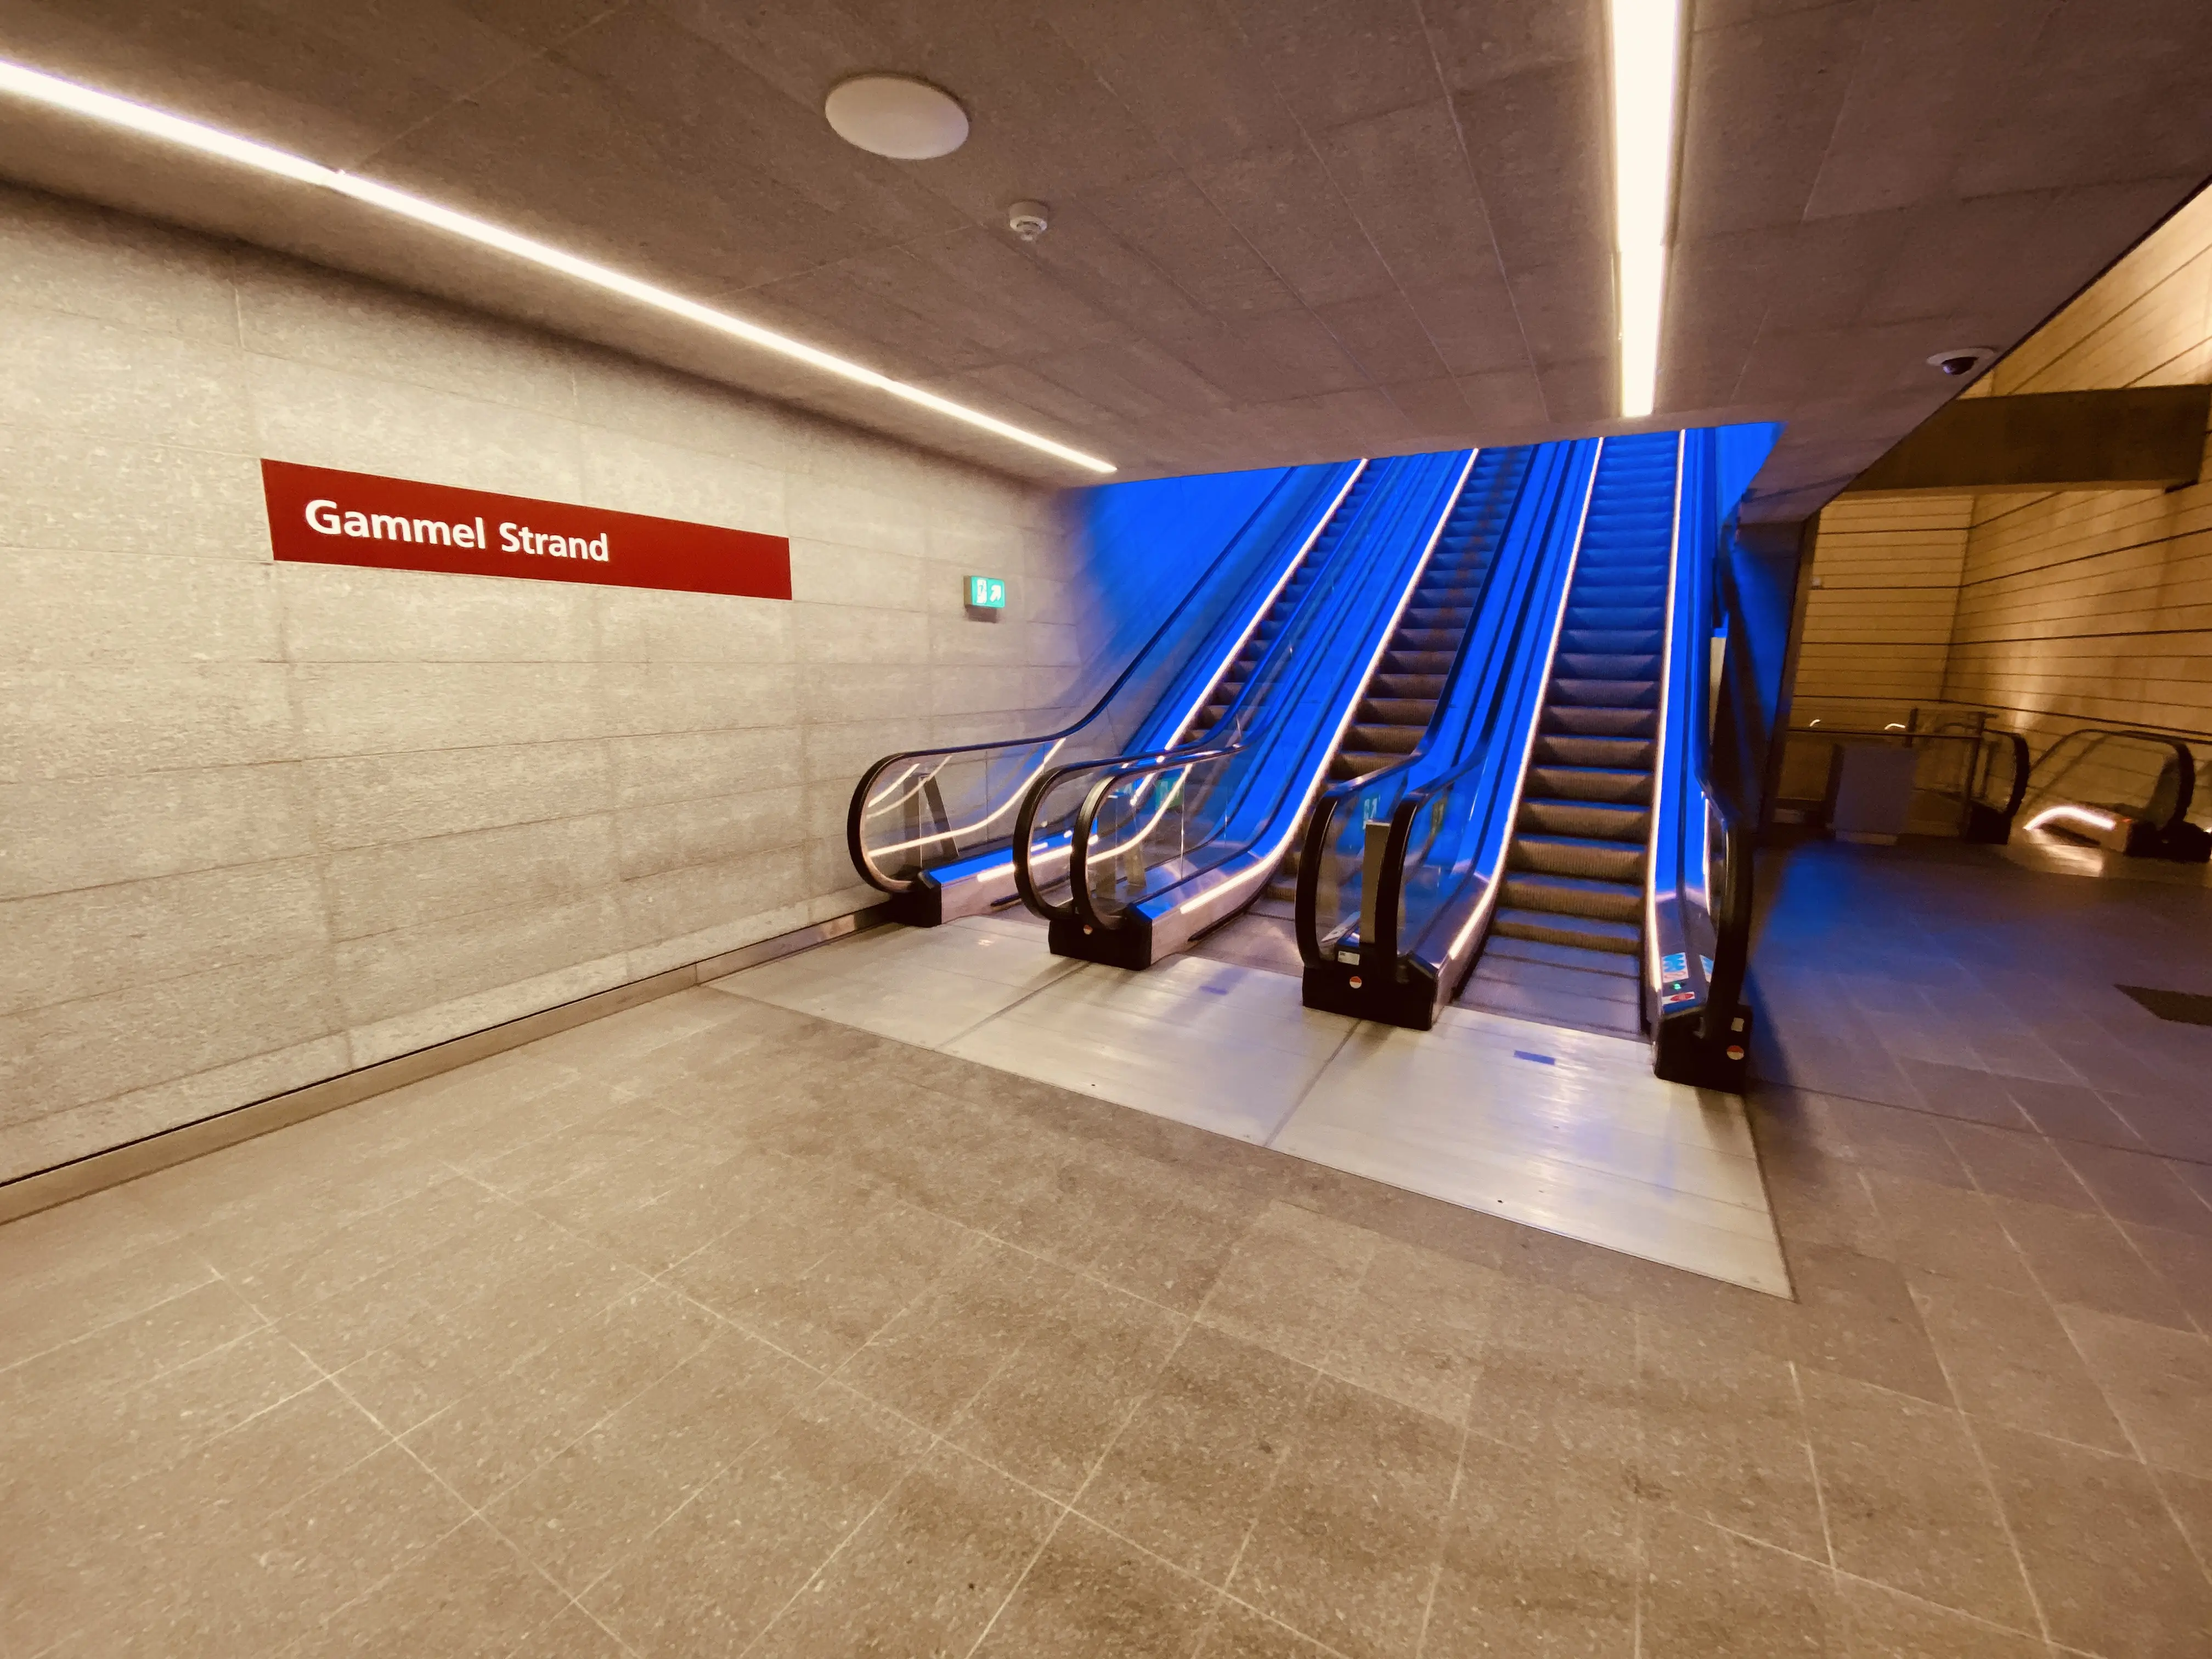 Billede af Gammel Strand Metrostation med et blåt lysspil, som er en hilsen til sollyset i vandoverfladen i Gammel Strands kanal, der løber lige ved siden af stationen.